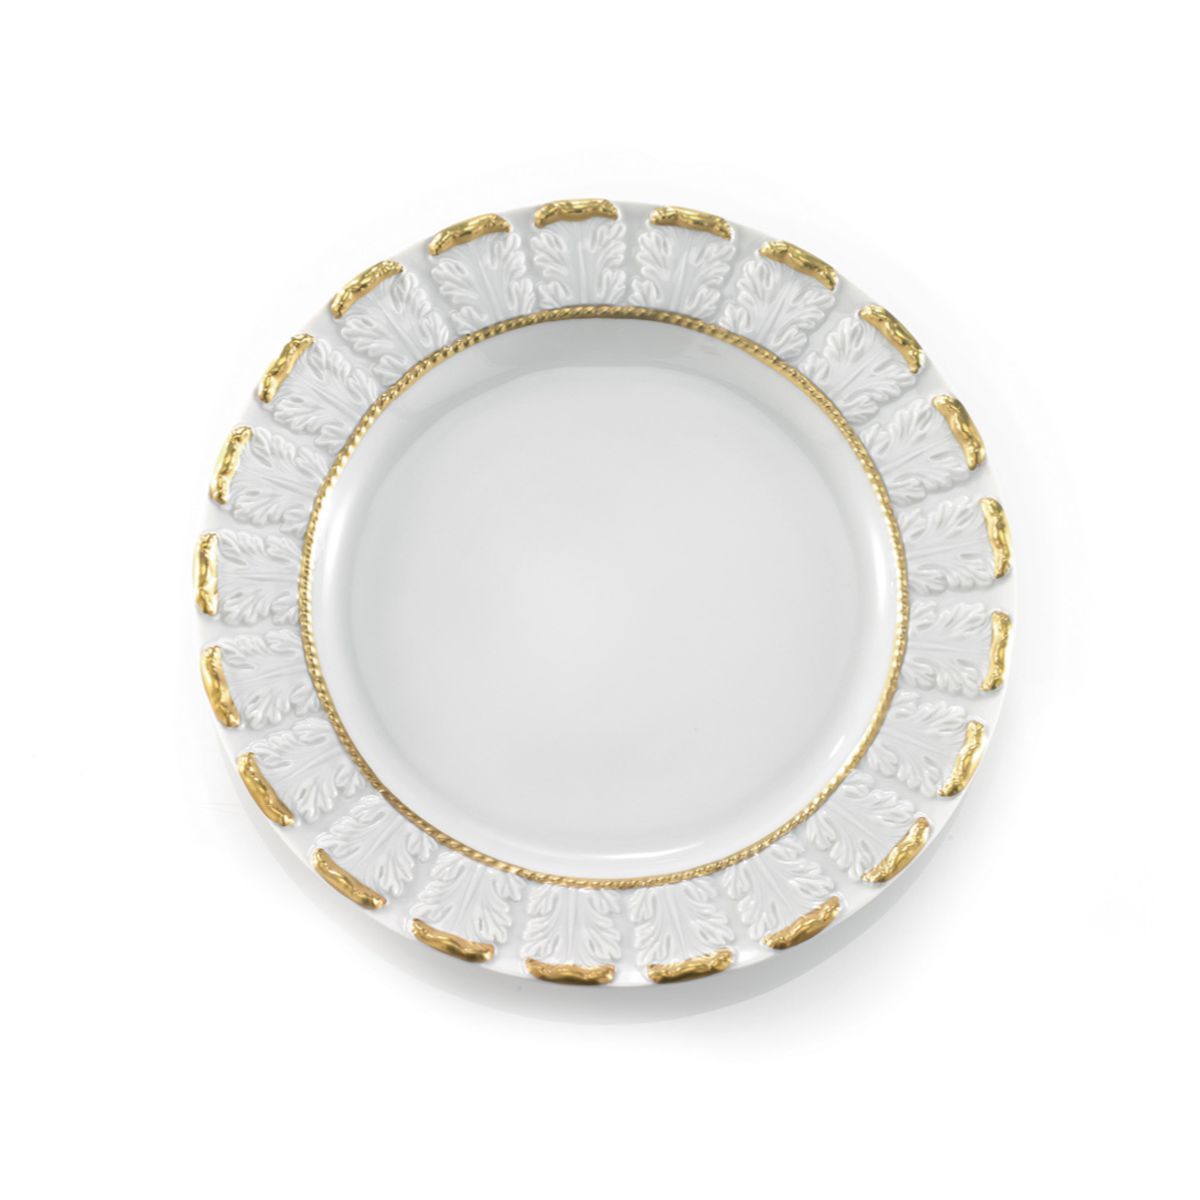 Queen Elizabeth White & Gold Dessert Plate